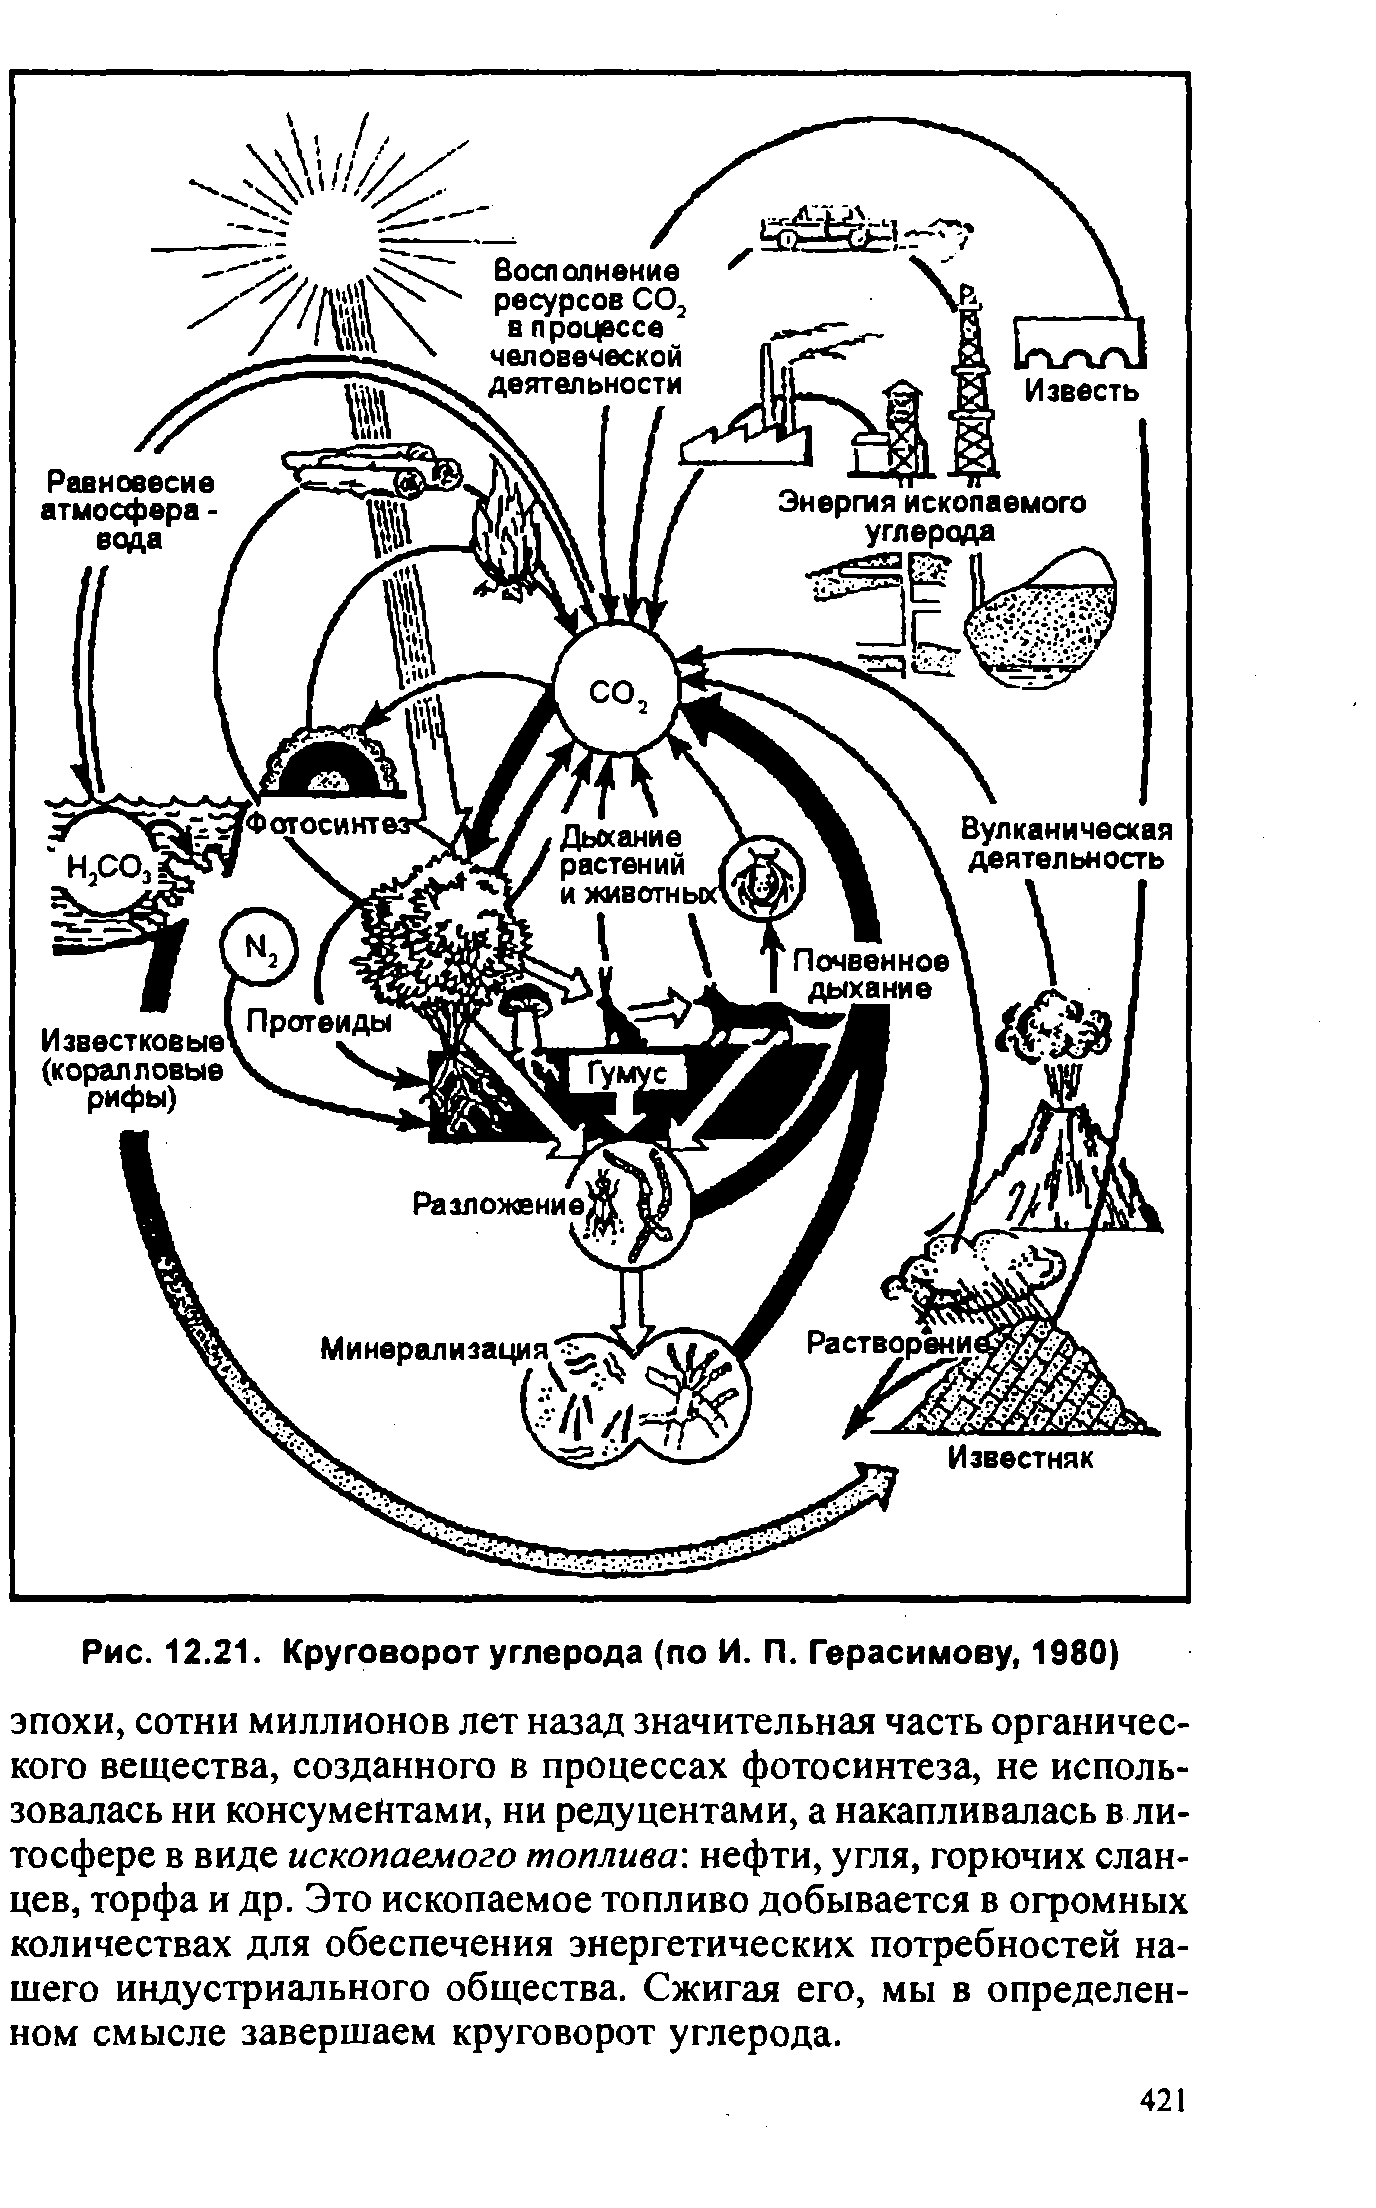 Круговорот углерода химия. Схема круговорота углерода в водной и наземной экосистемах. Круговорот углерода (по ф. Рамад, 1981). Круговорот углерода в природе схема. Схема биогеохимического цикла углерода в биосфере.